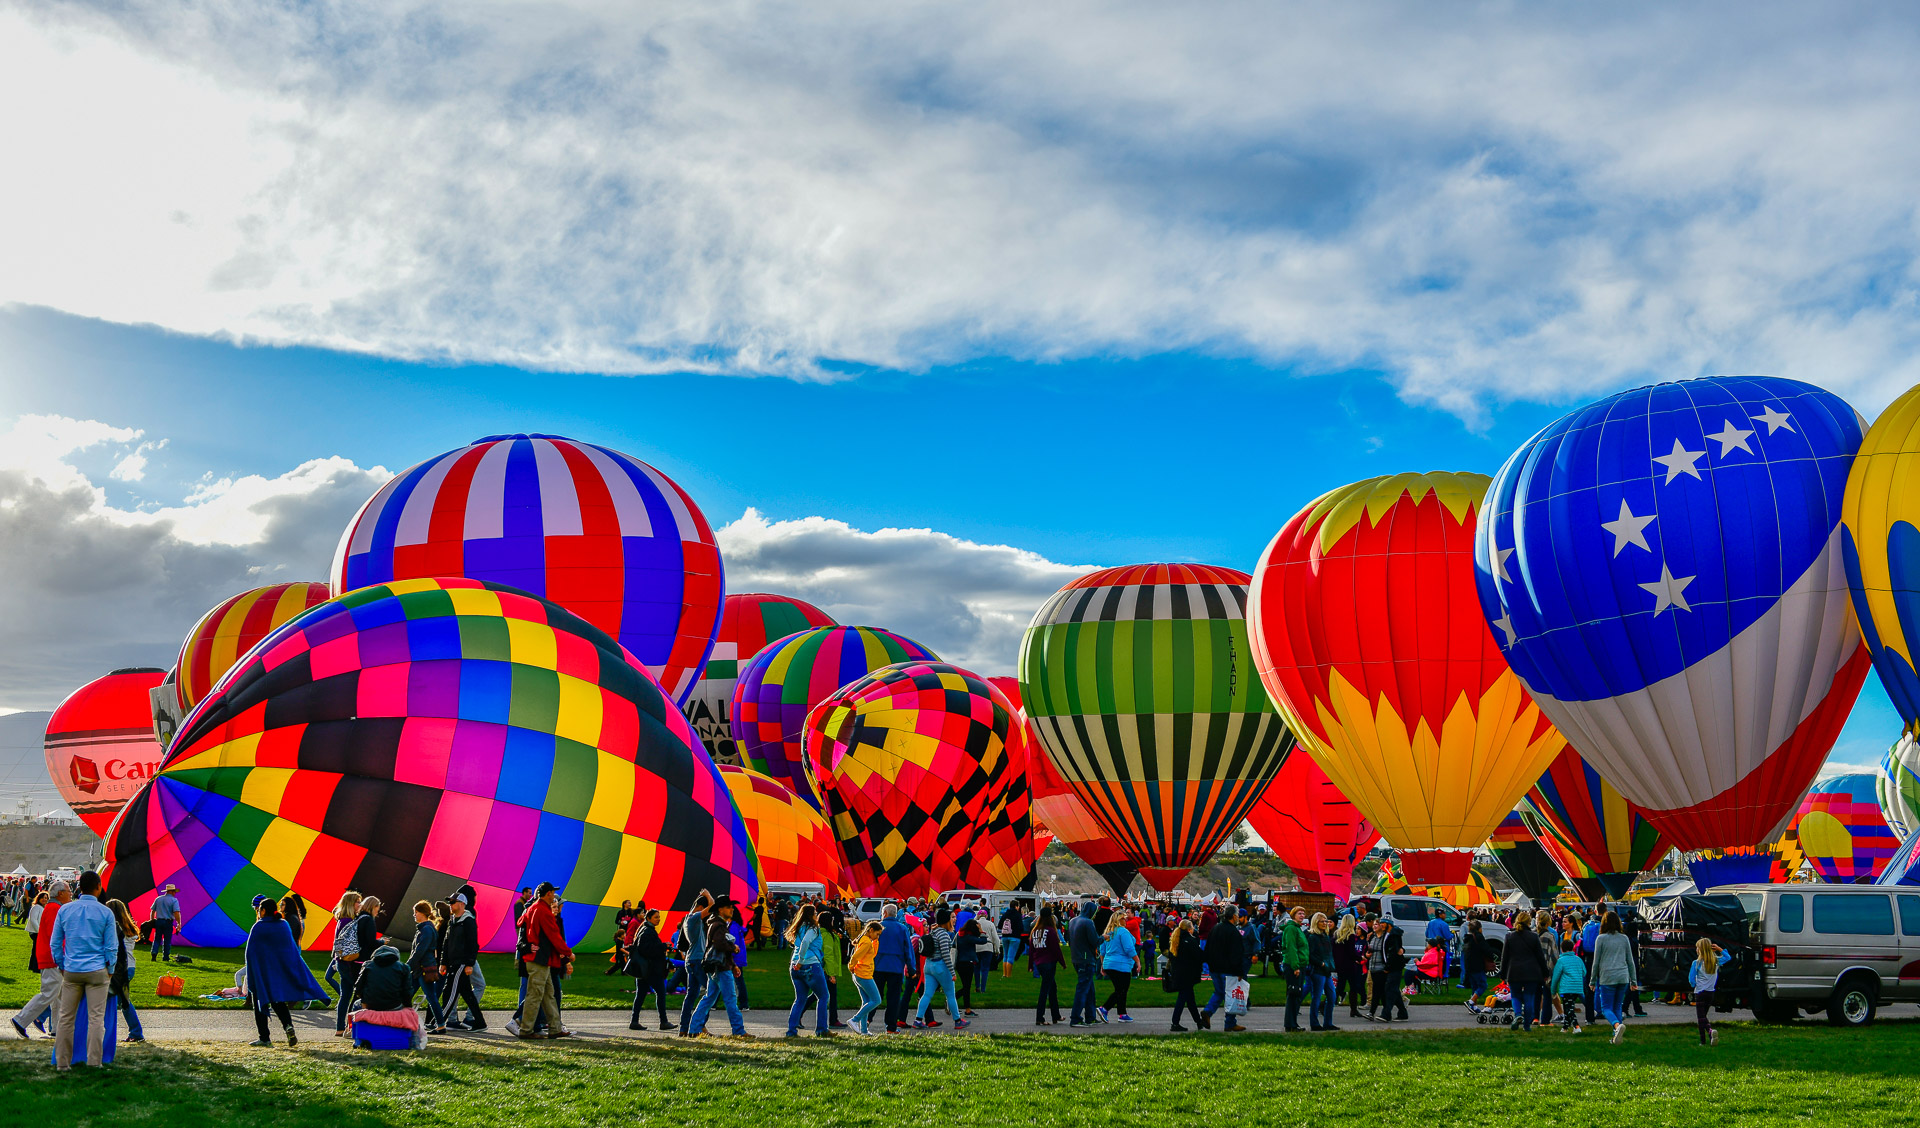 Albuquerque International Hot Air Balloon Fiesta 2018 New Mexico